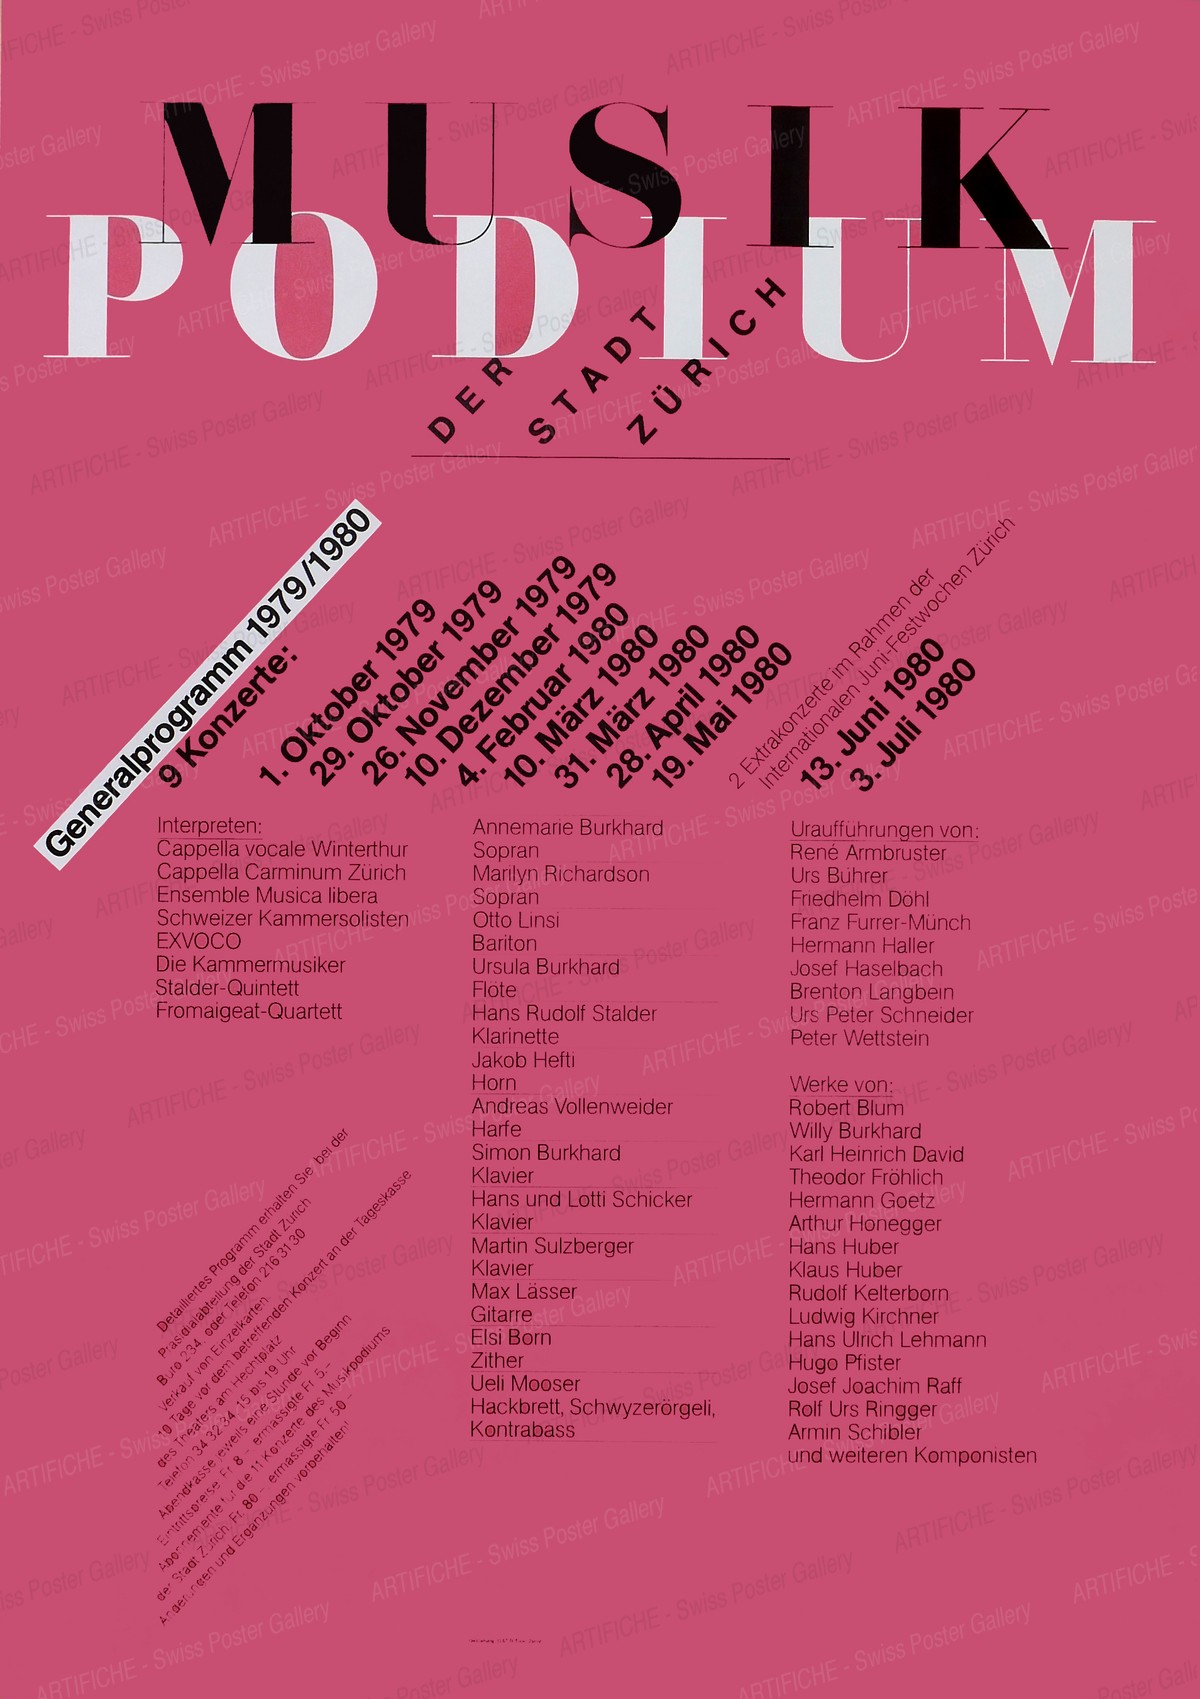 Musik Podium der Stadt Zürich – Generalprogramm 1979 / 1980, Odermatt, Siegfried / Tissi, Rosmarie